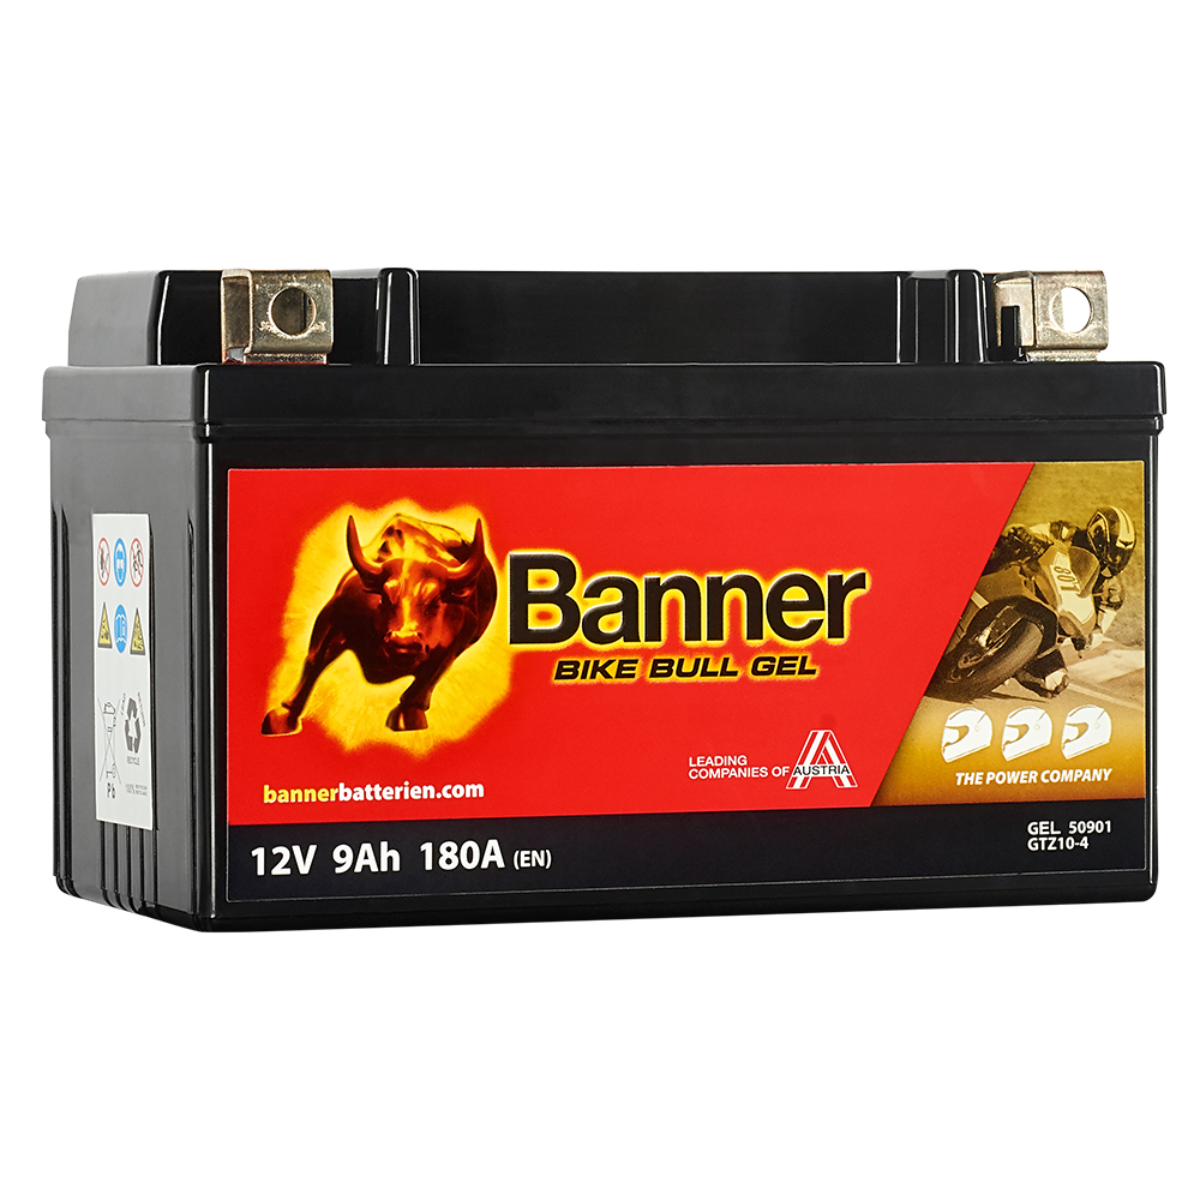 Batteri Banner Bike Bull GTZ10-4 50901 GEL